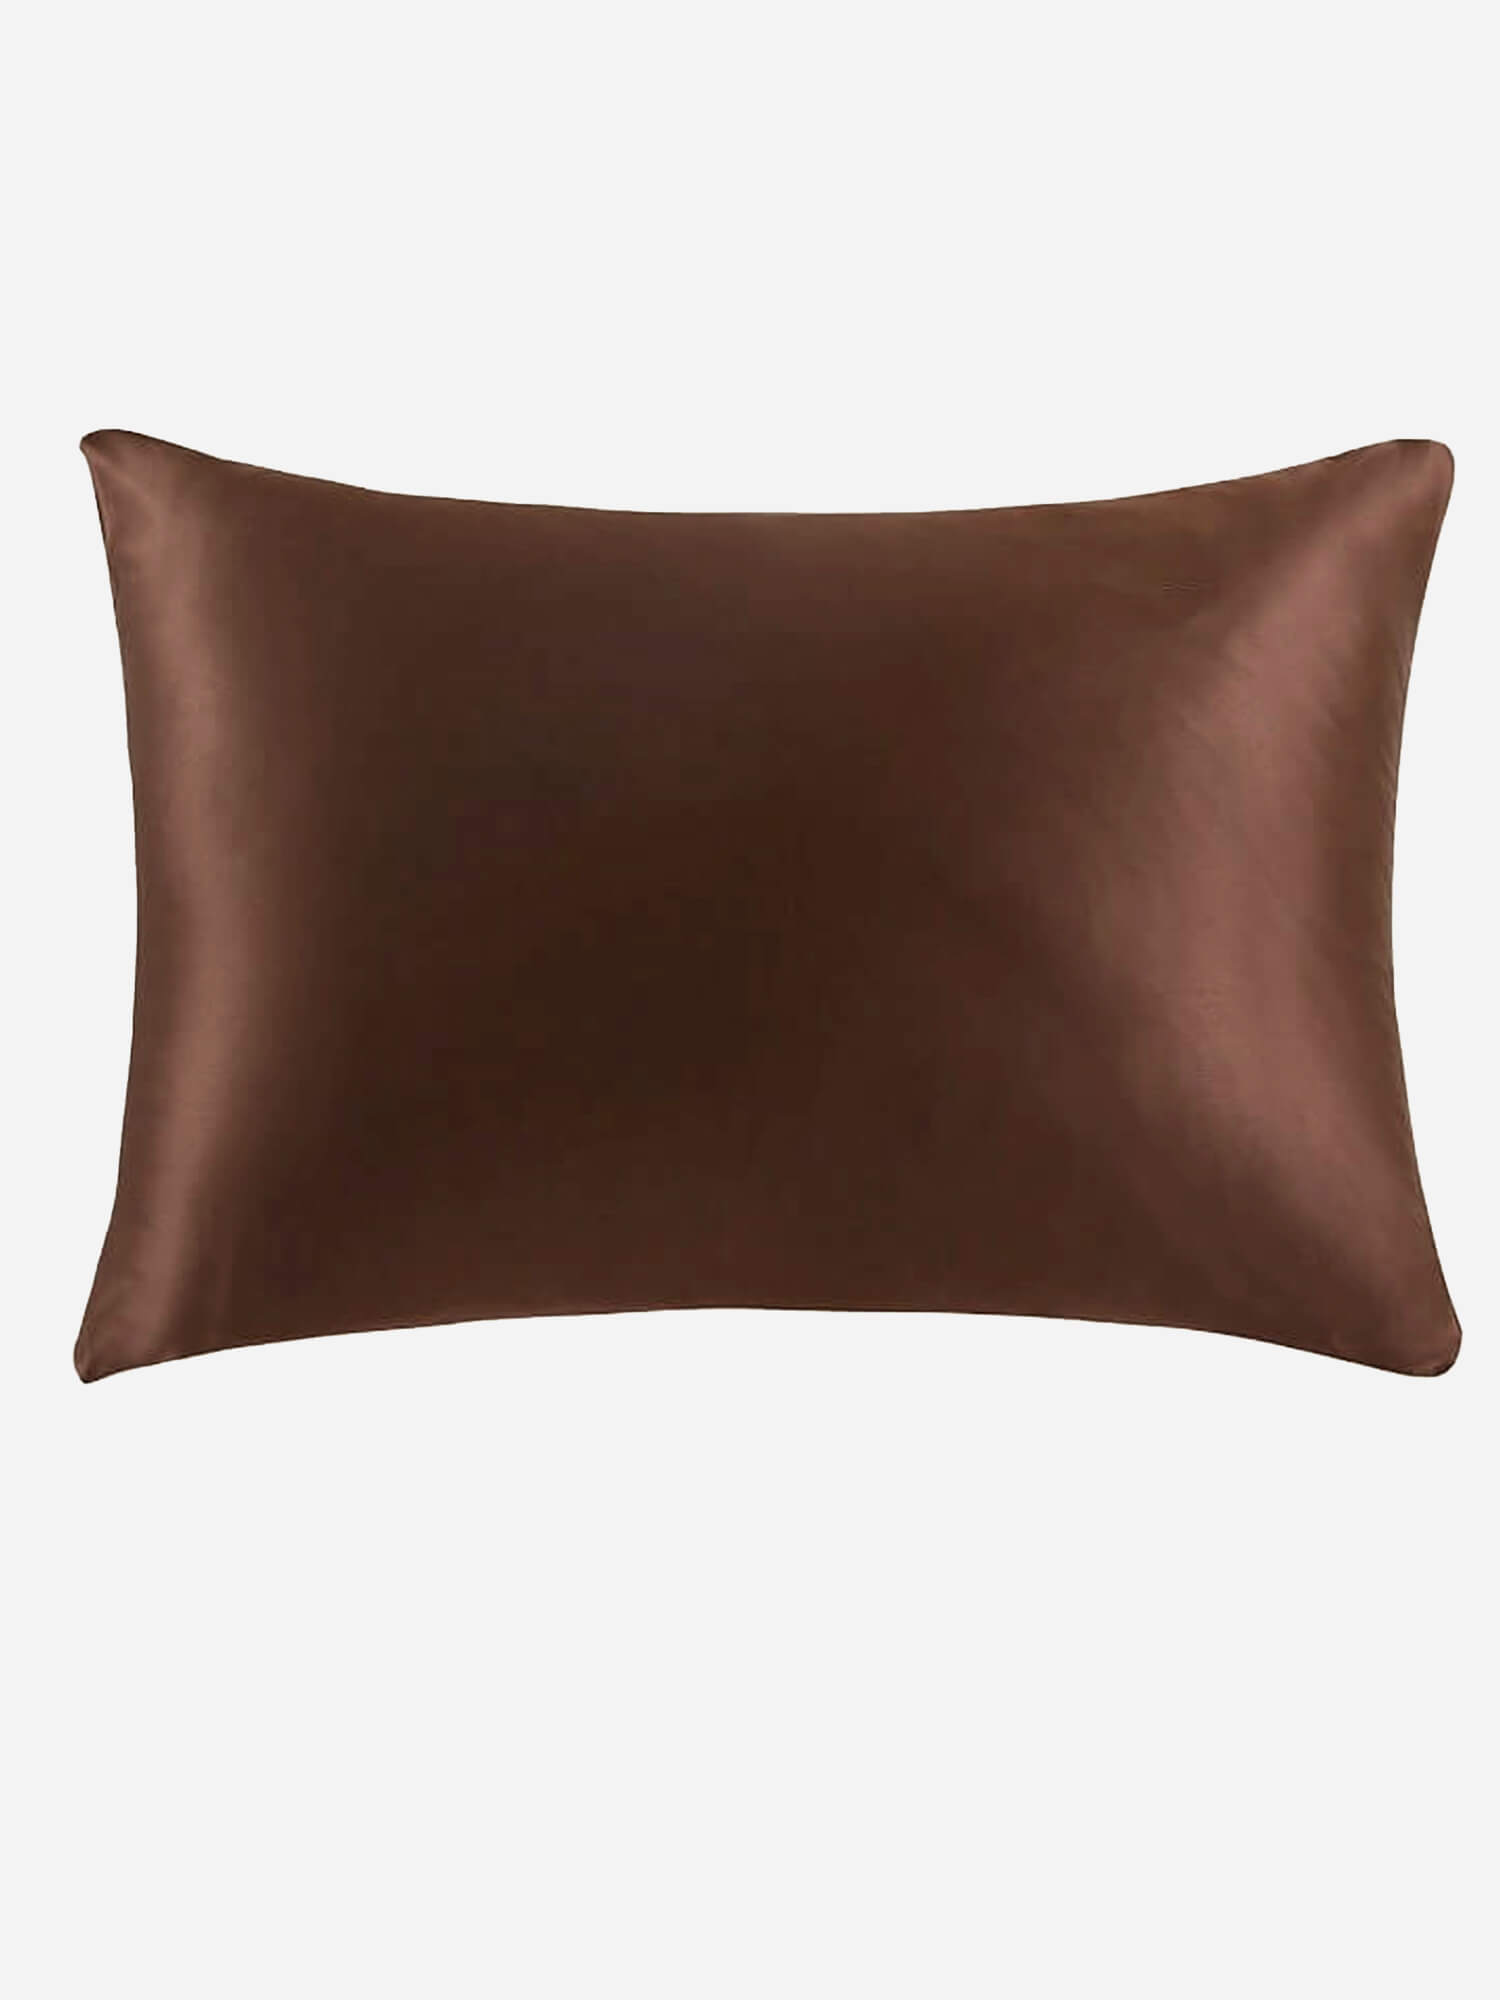 19 Momme Terse Silk Pillowcase With Hidden Zipper